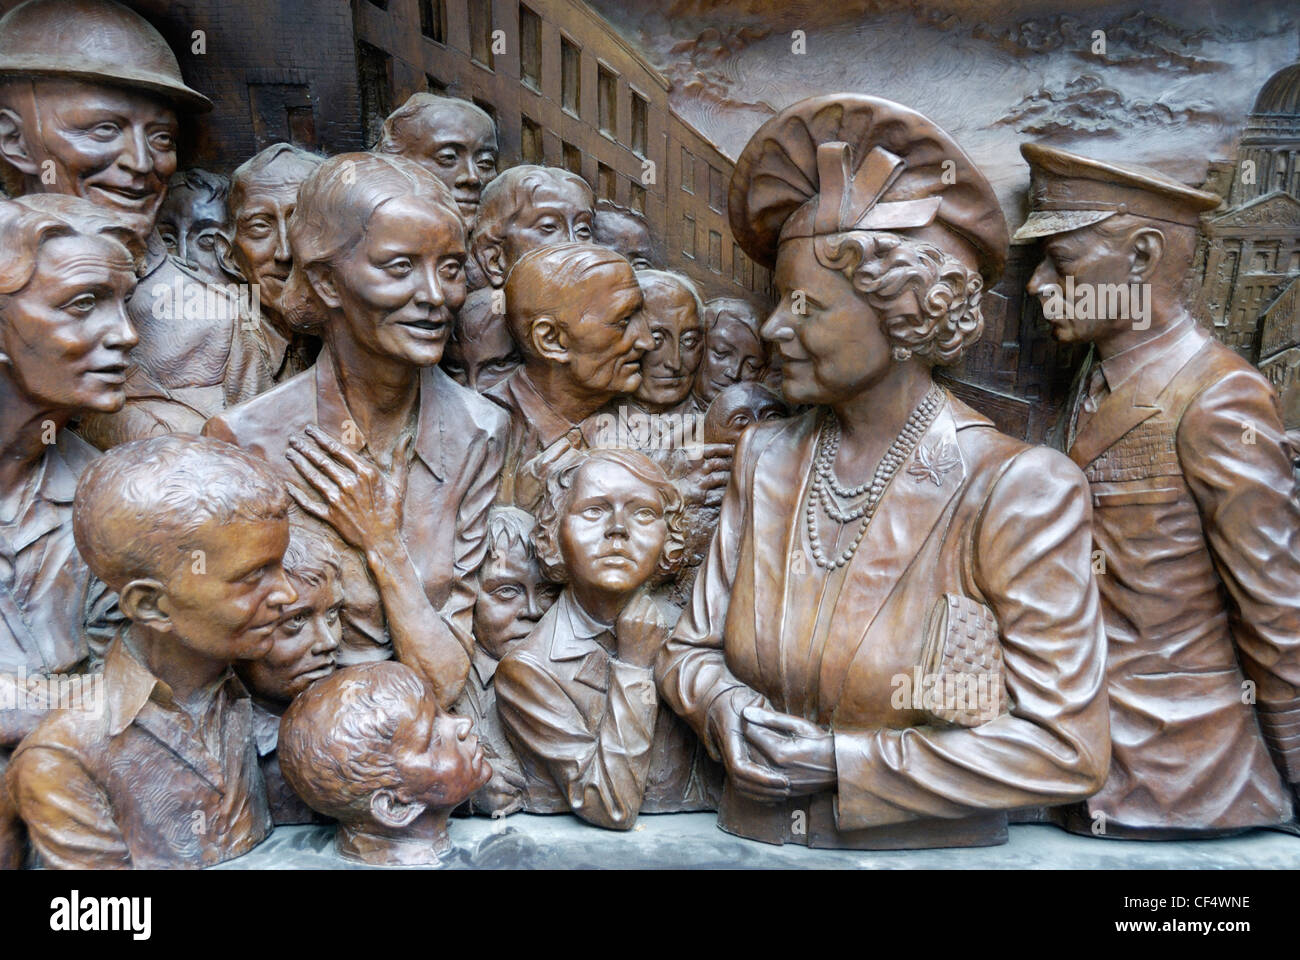 Parte di un rilievo bronzeo che mostra la regina Elisabetta Regina madre e King George VI incontro i cittadini di Londra durante il Blitz. Th Foto Stock